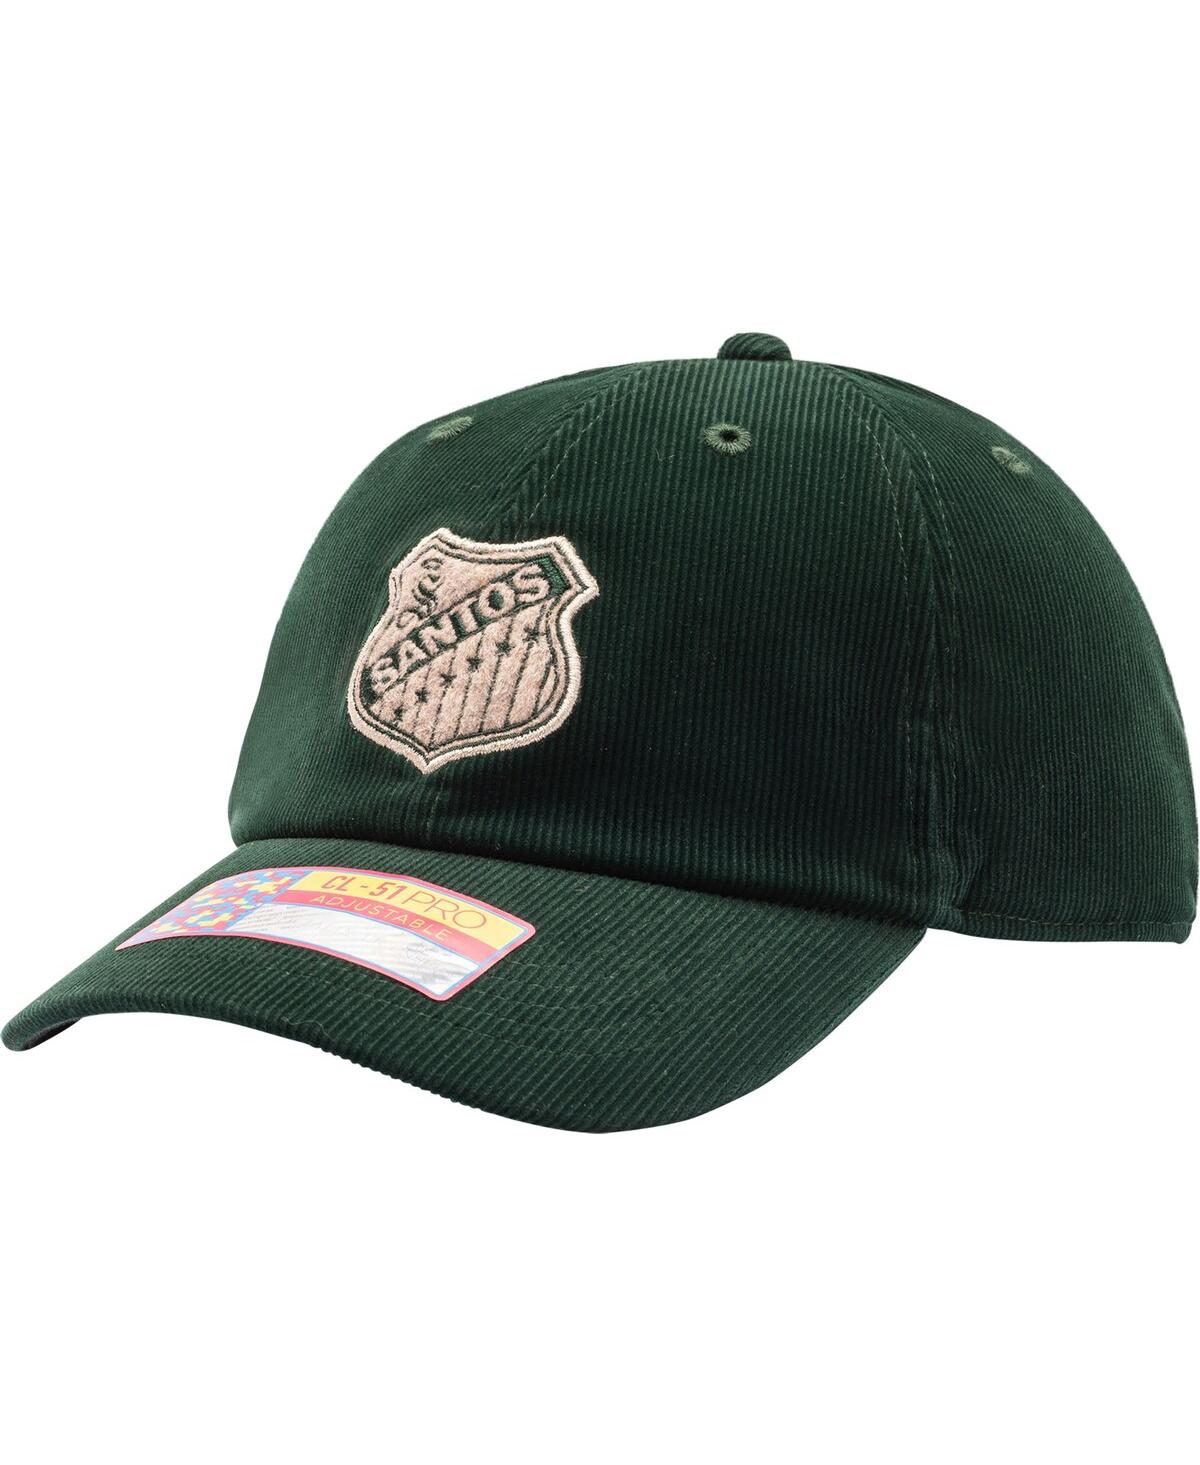 Men's Green Santos Laguna Princeton Adjustable Hat - Green